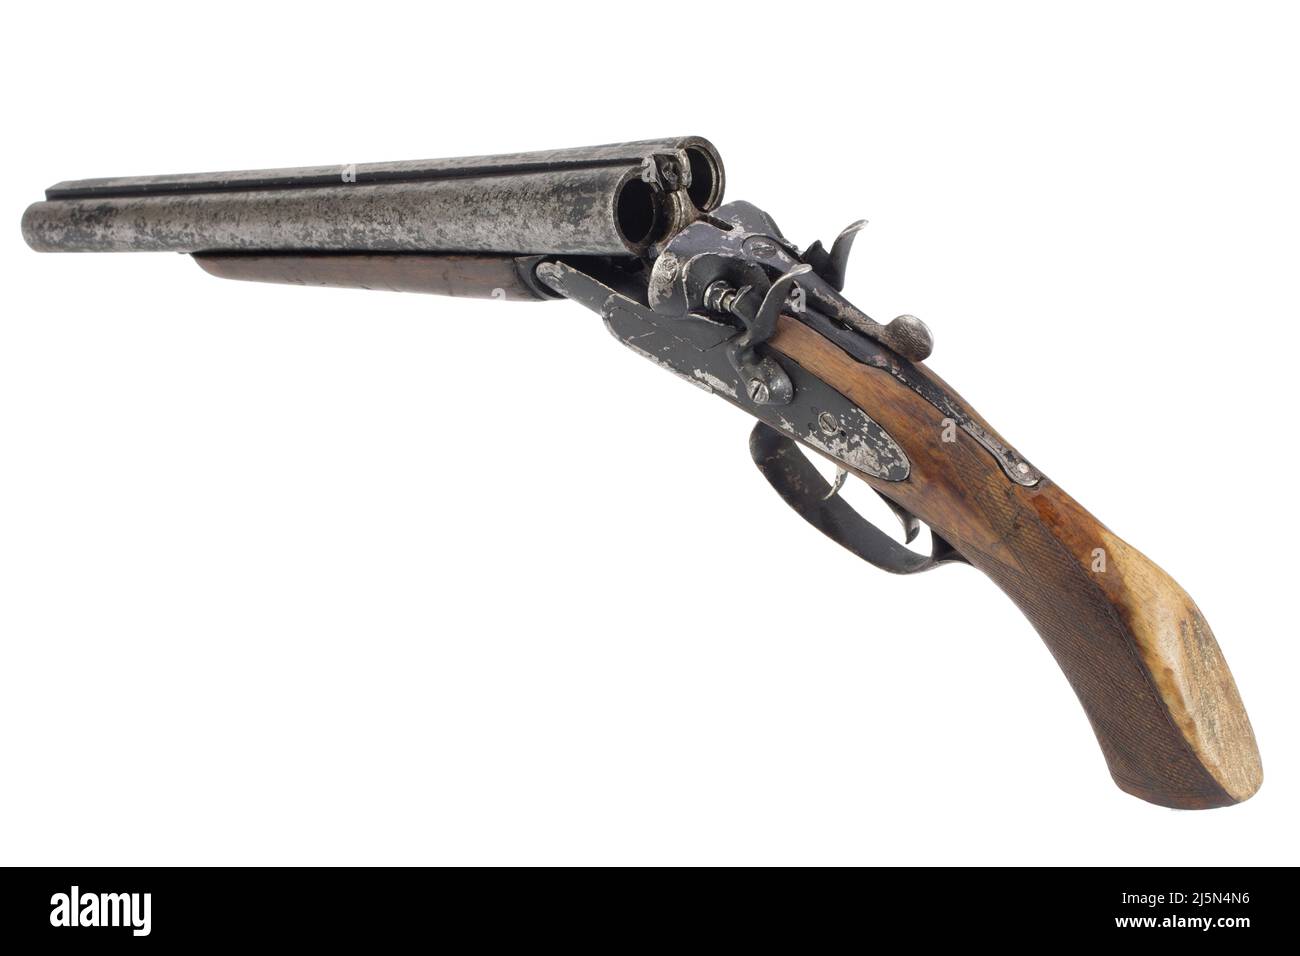 Criminal weapon - sawn-off shotgun isolated on white Stock Photo